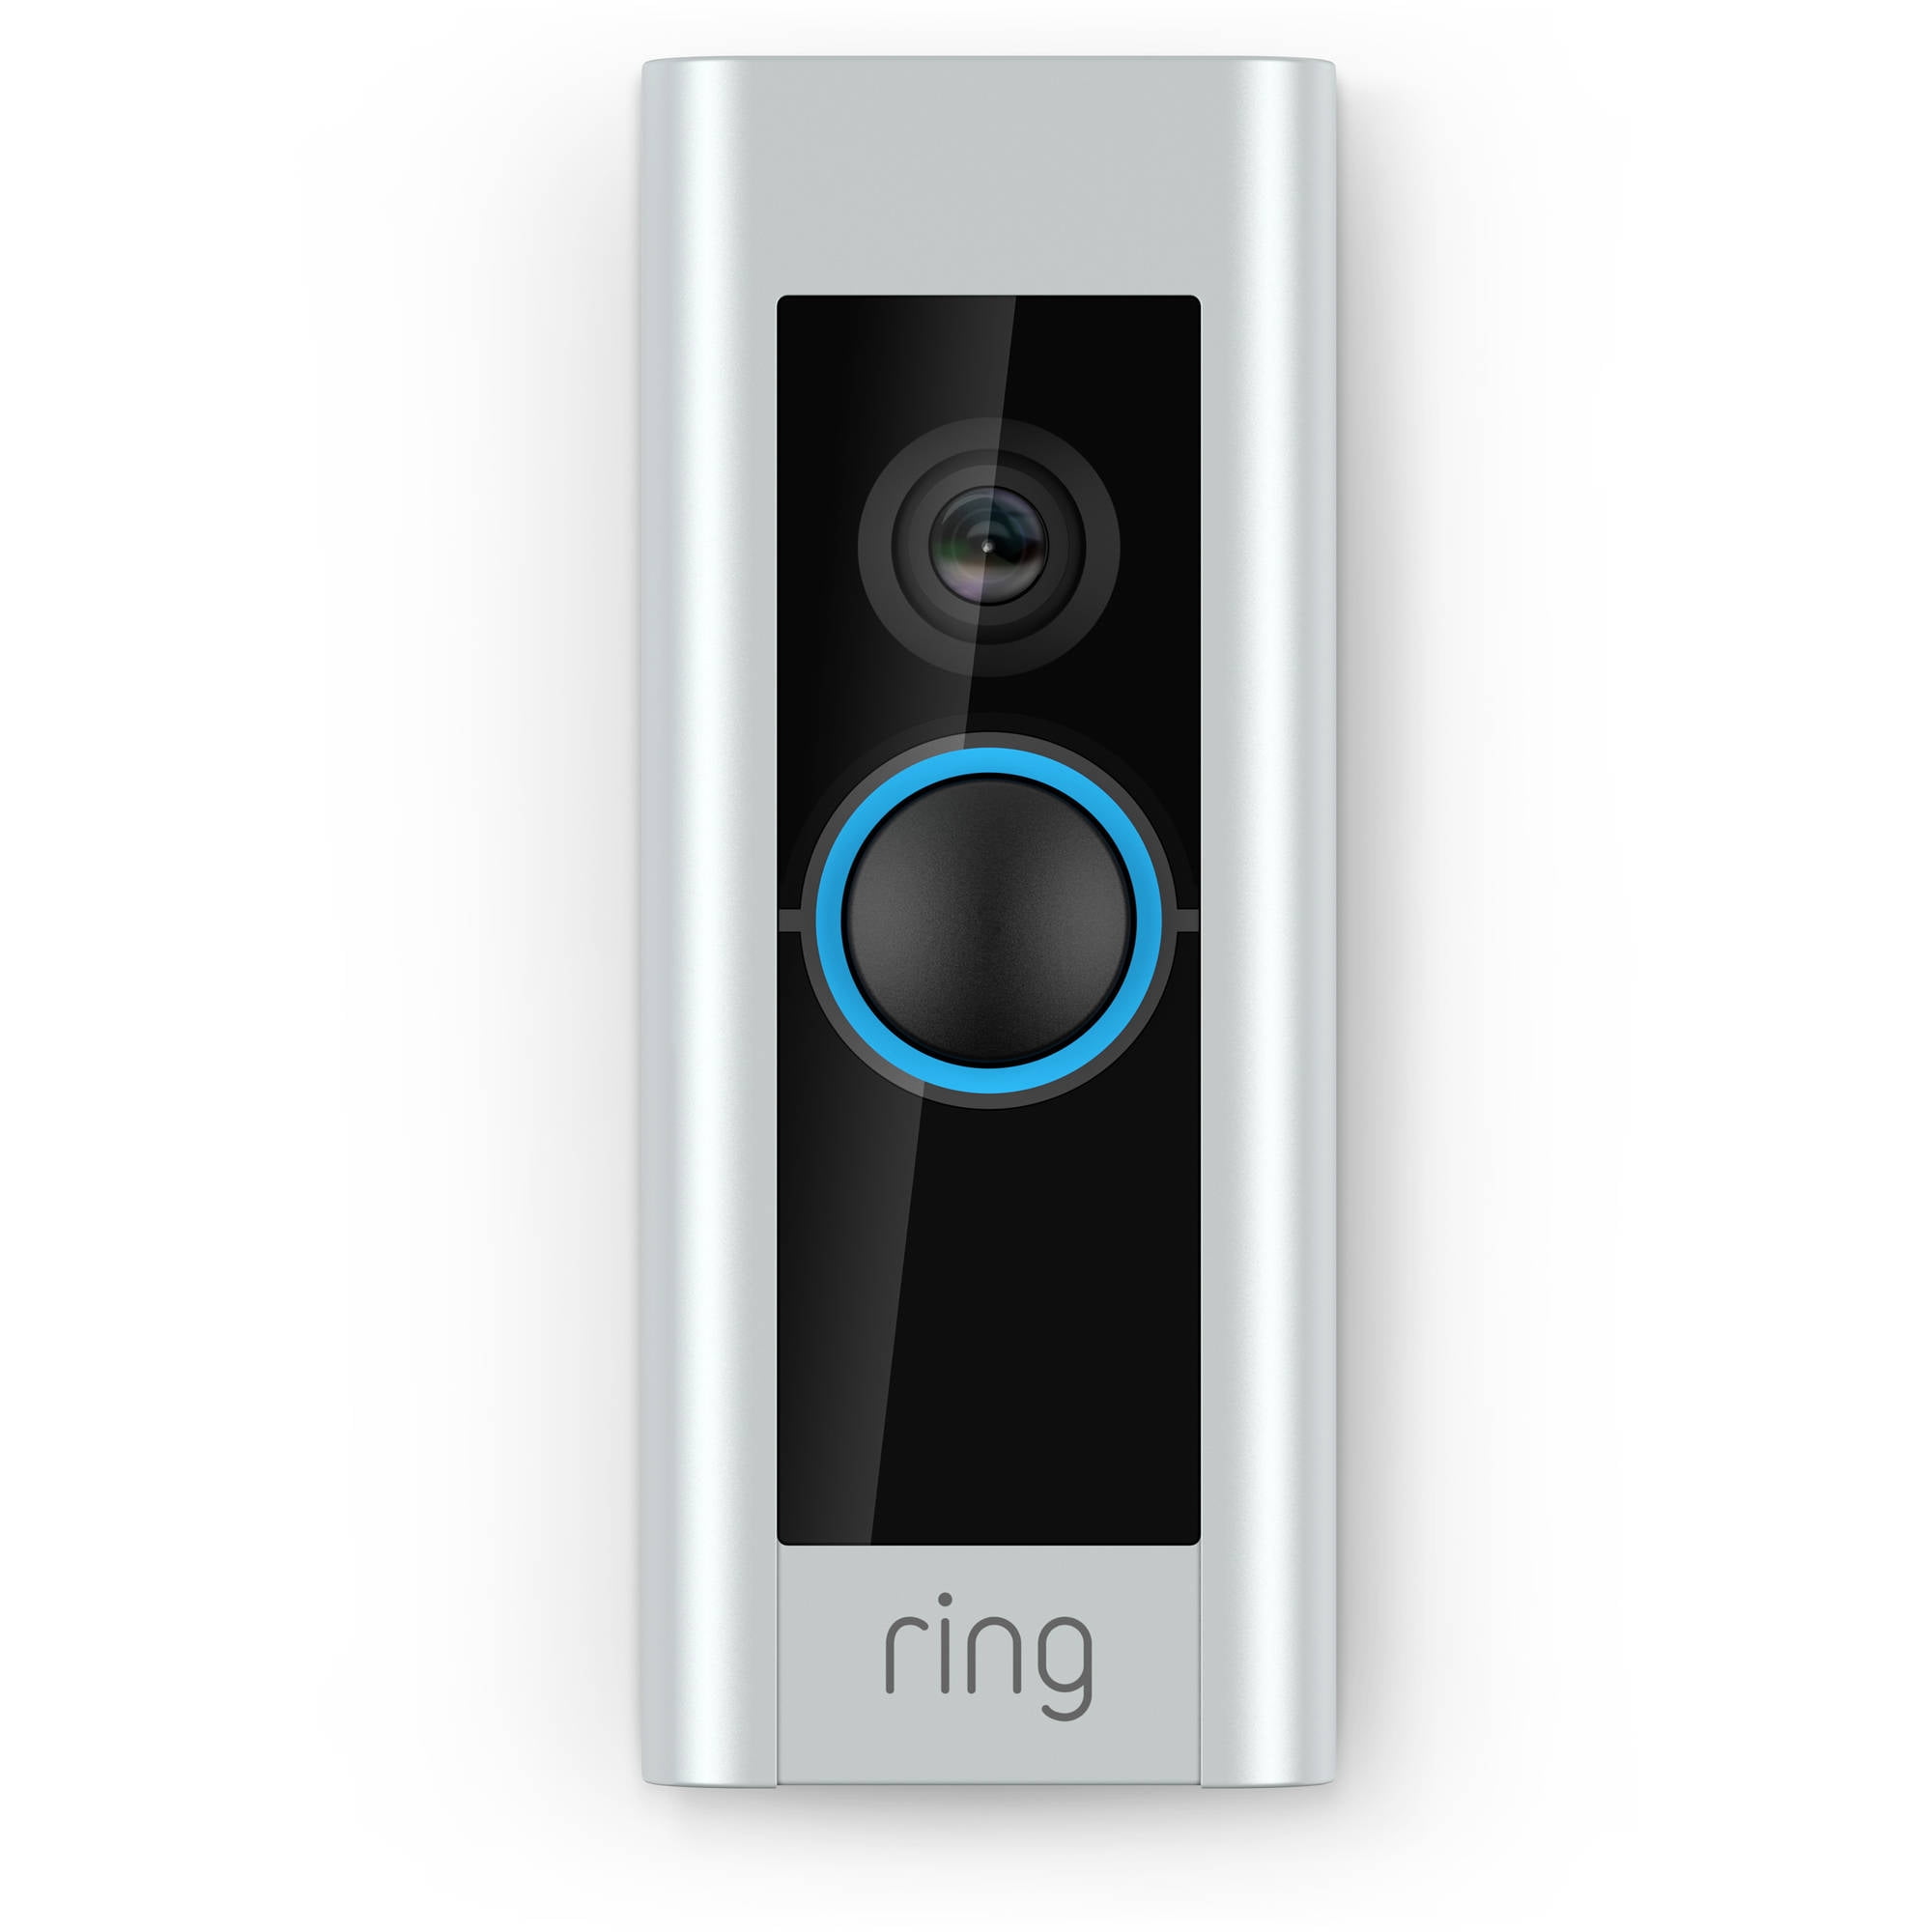 walmart ring 2 doorbell